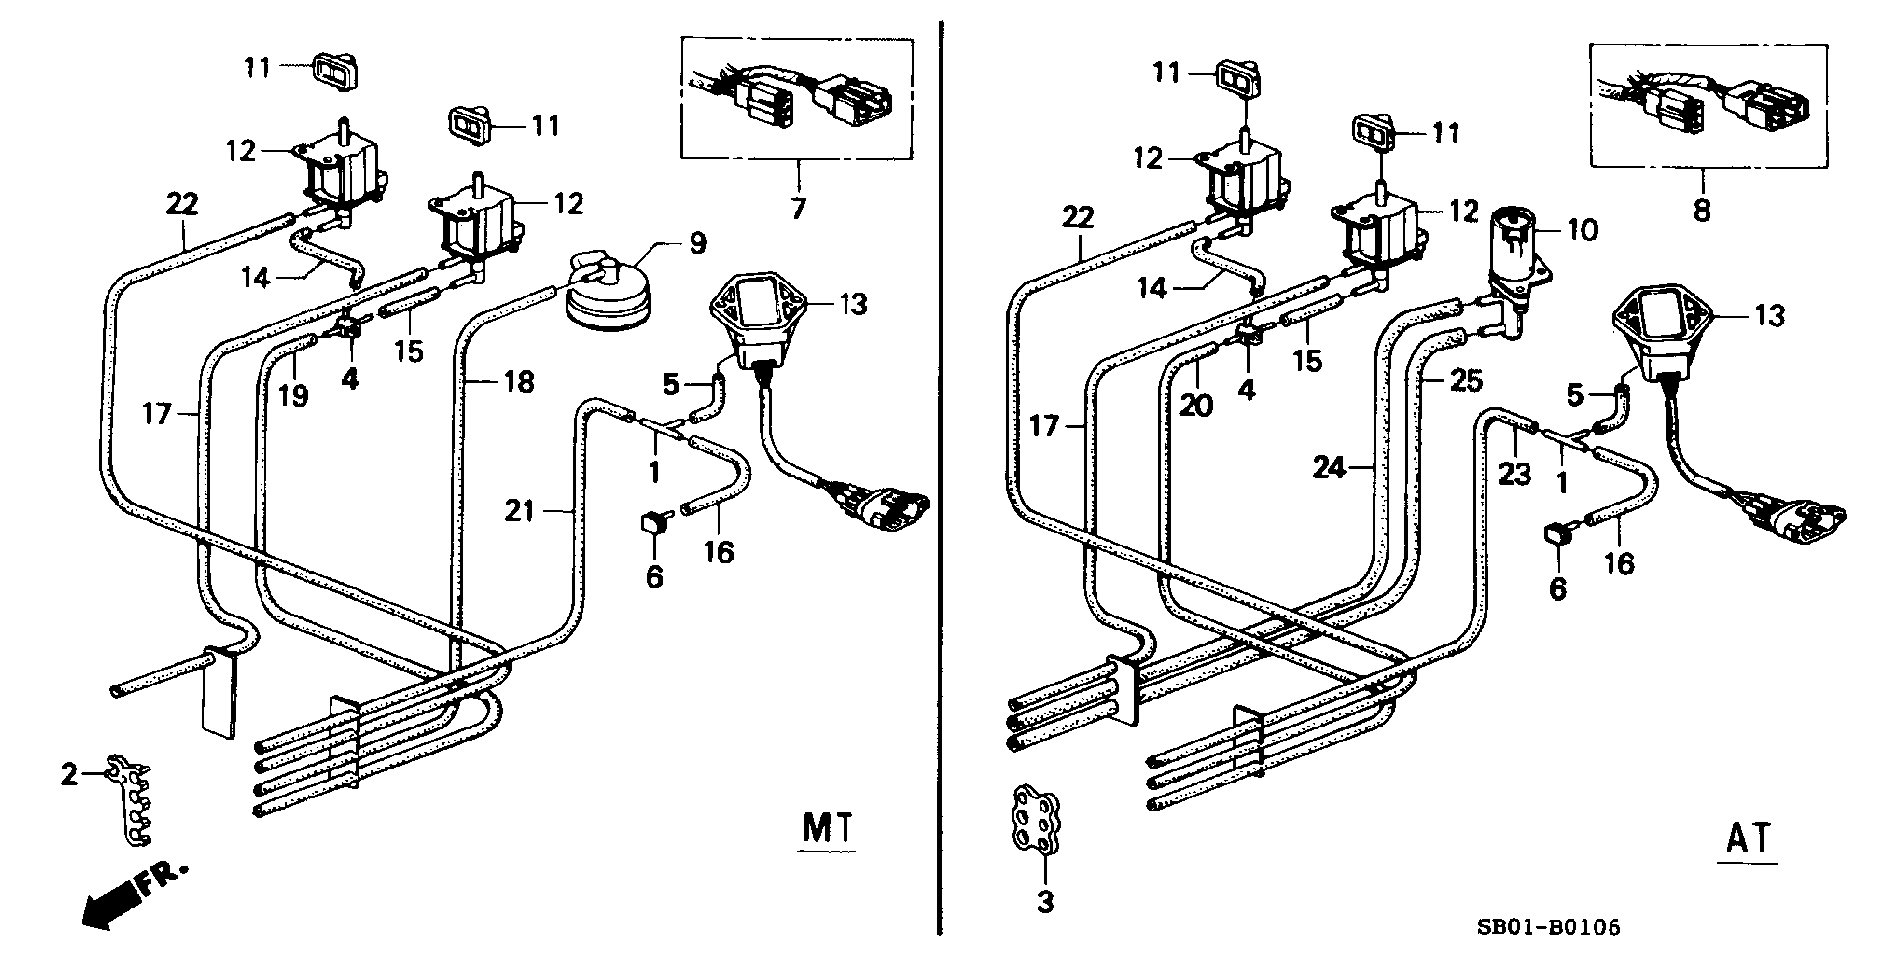 CONTROL BOX TUBING (PGM-FI)